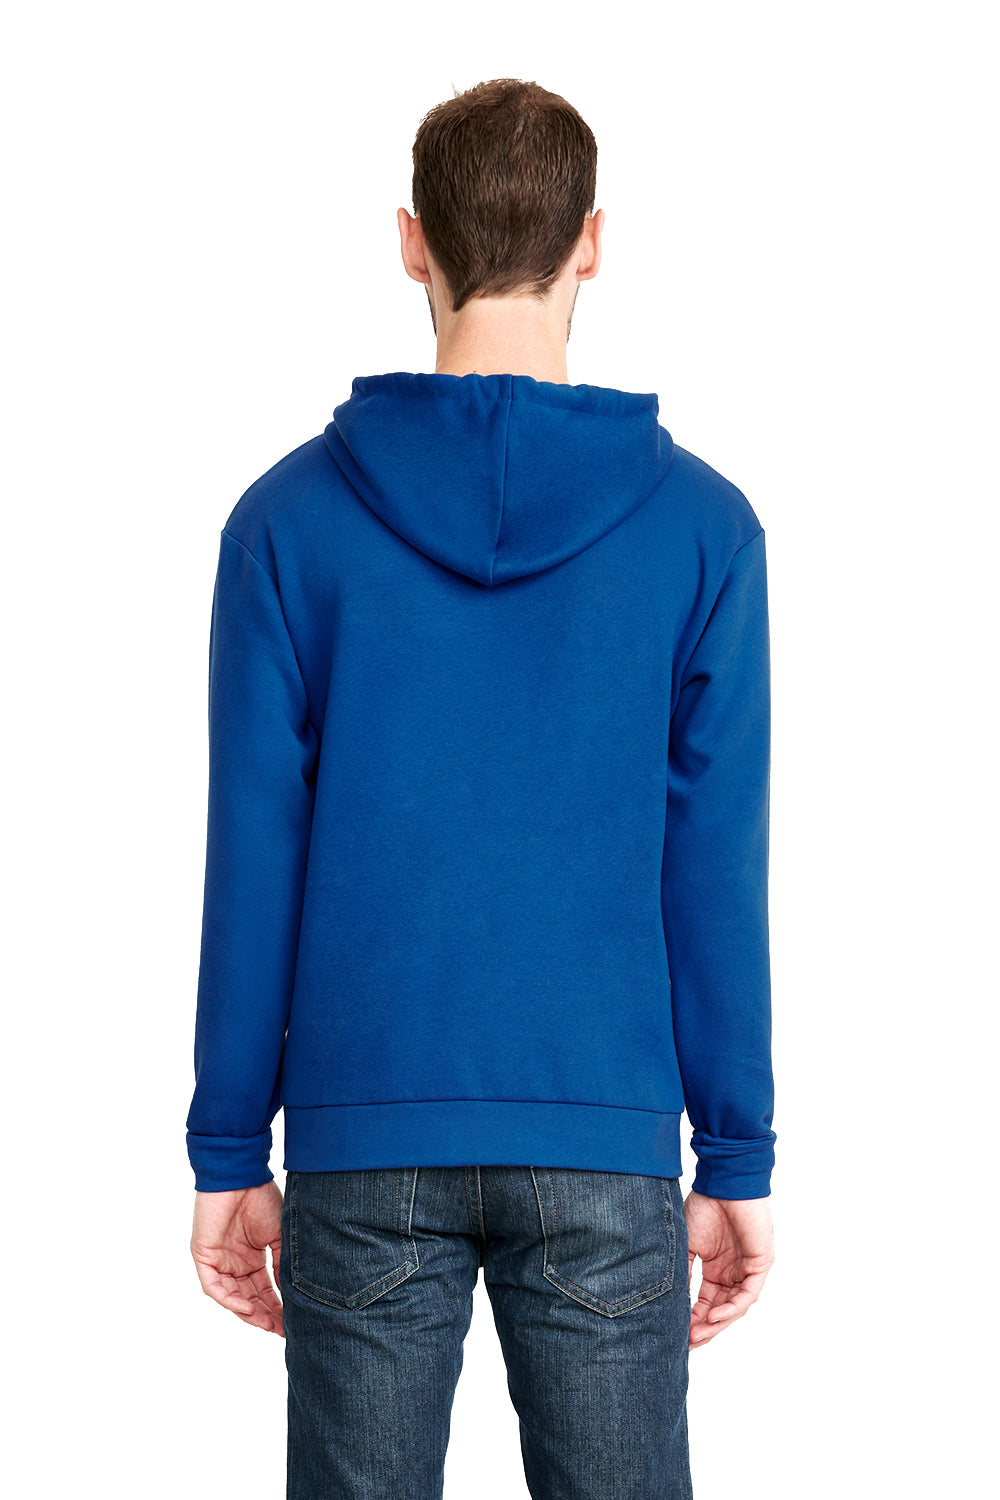 Next Level 9602 Mens Fleece Full Zip Hooded Sweatshirt Hoodie Royal Blue Back